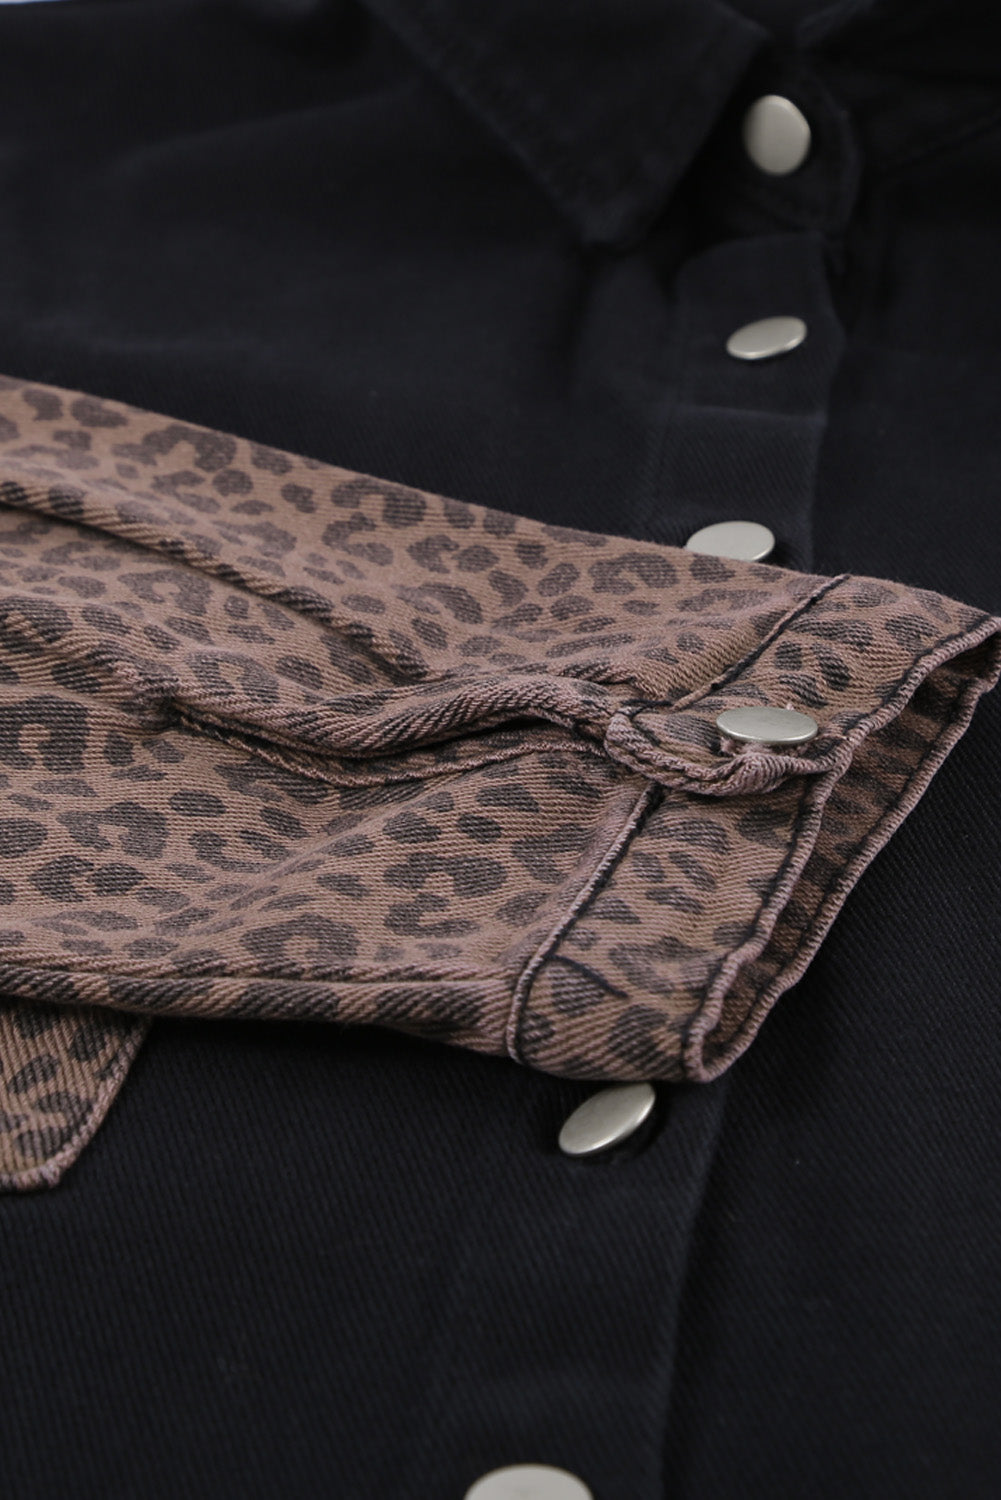 Crna traper jakna s leopardovim kontrastom